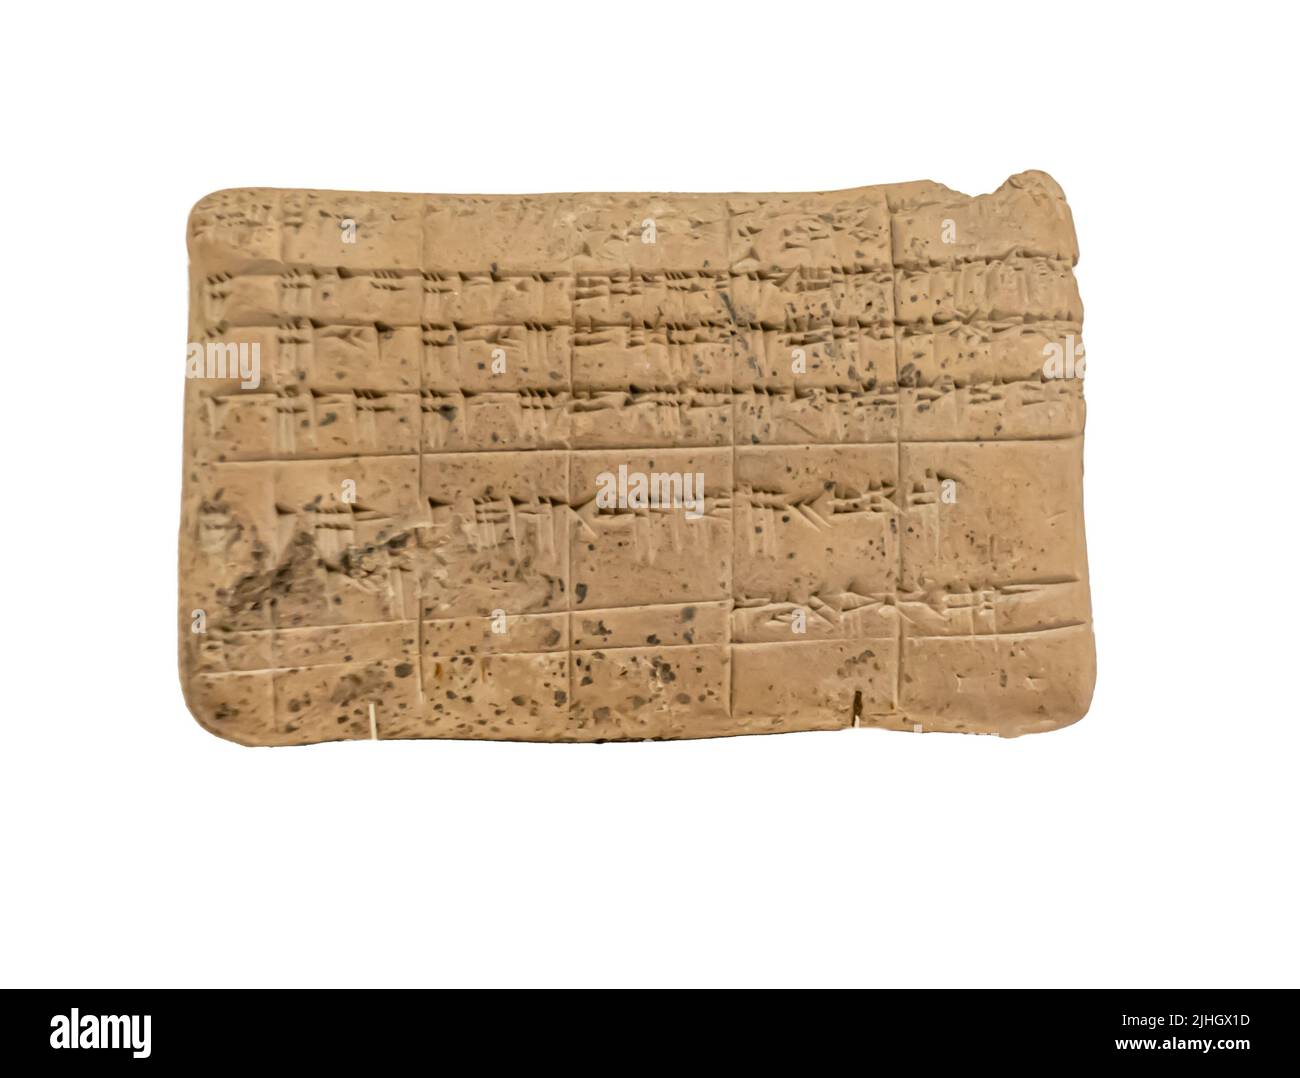 Rechtliche und administrative Dokumente in sumerischer und akkadischer Sprache. Babylonien. Anfang 2. Jahrtausend v. Chr. Stockfoto